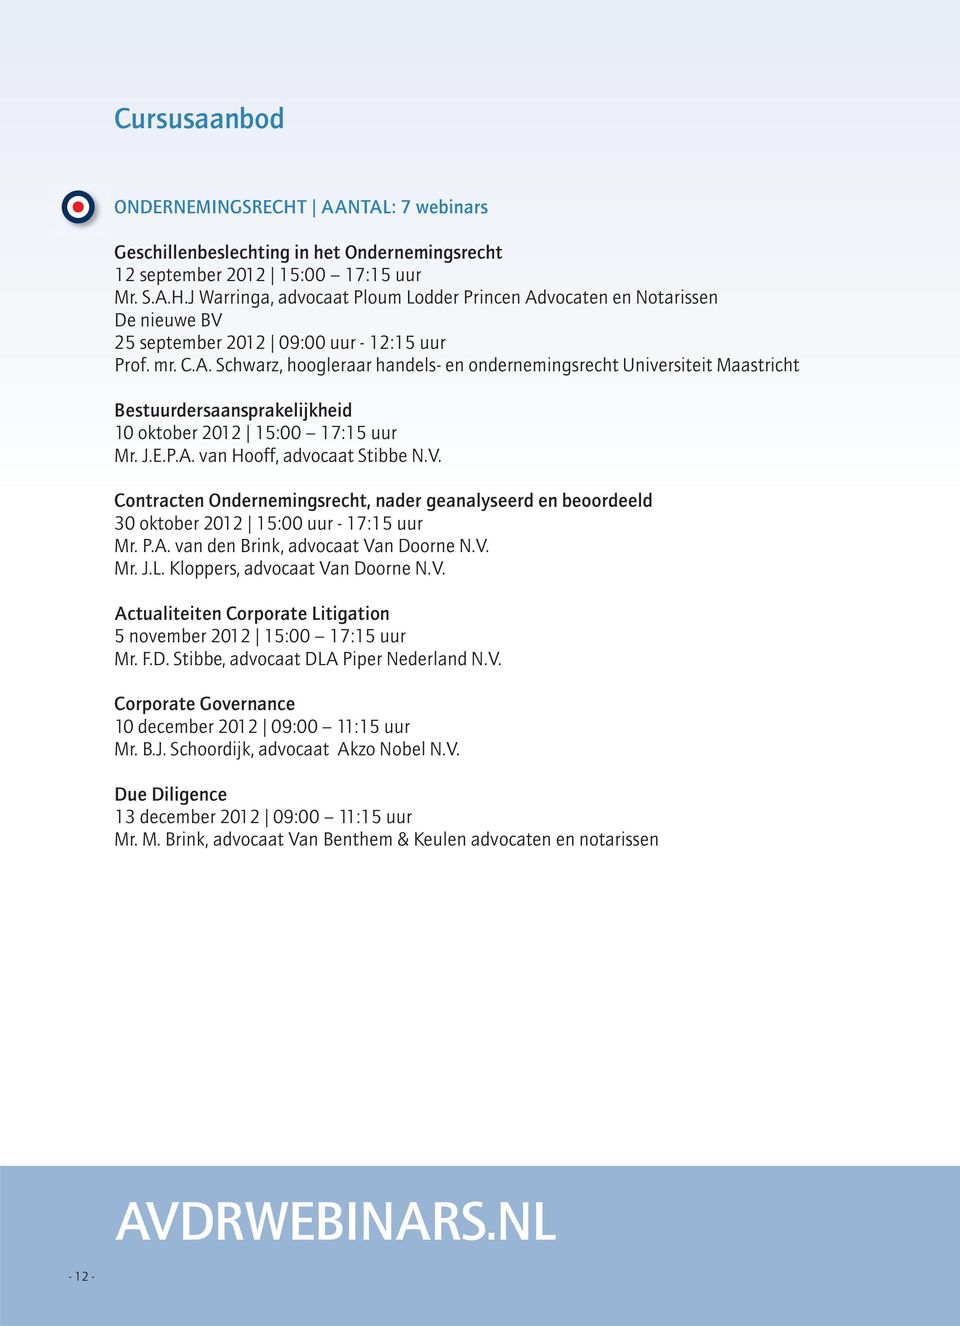 Contracten Ondernemingsrecht, nader geanalyseerd en beoordeeld 30 oktober 2012 15:00 uur - 17:15 uur Mr. P.A. van den Brink, advocaat Va